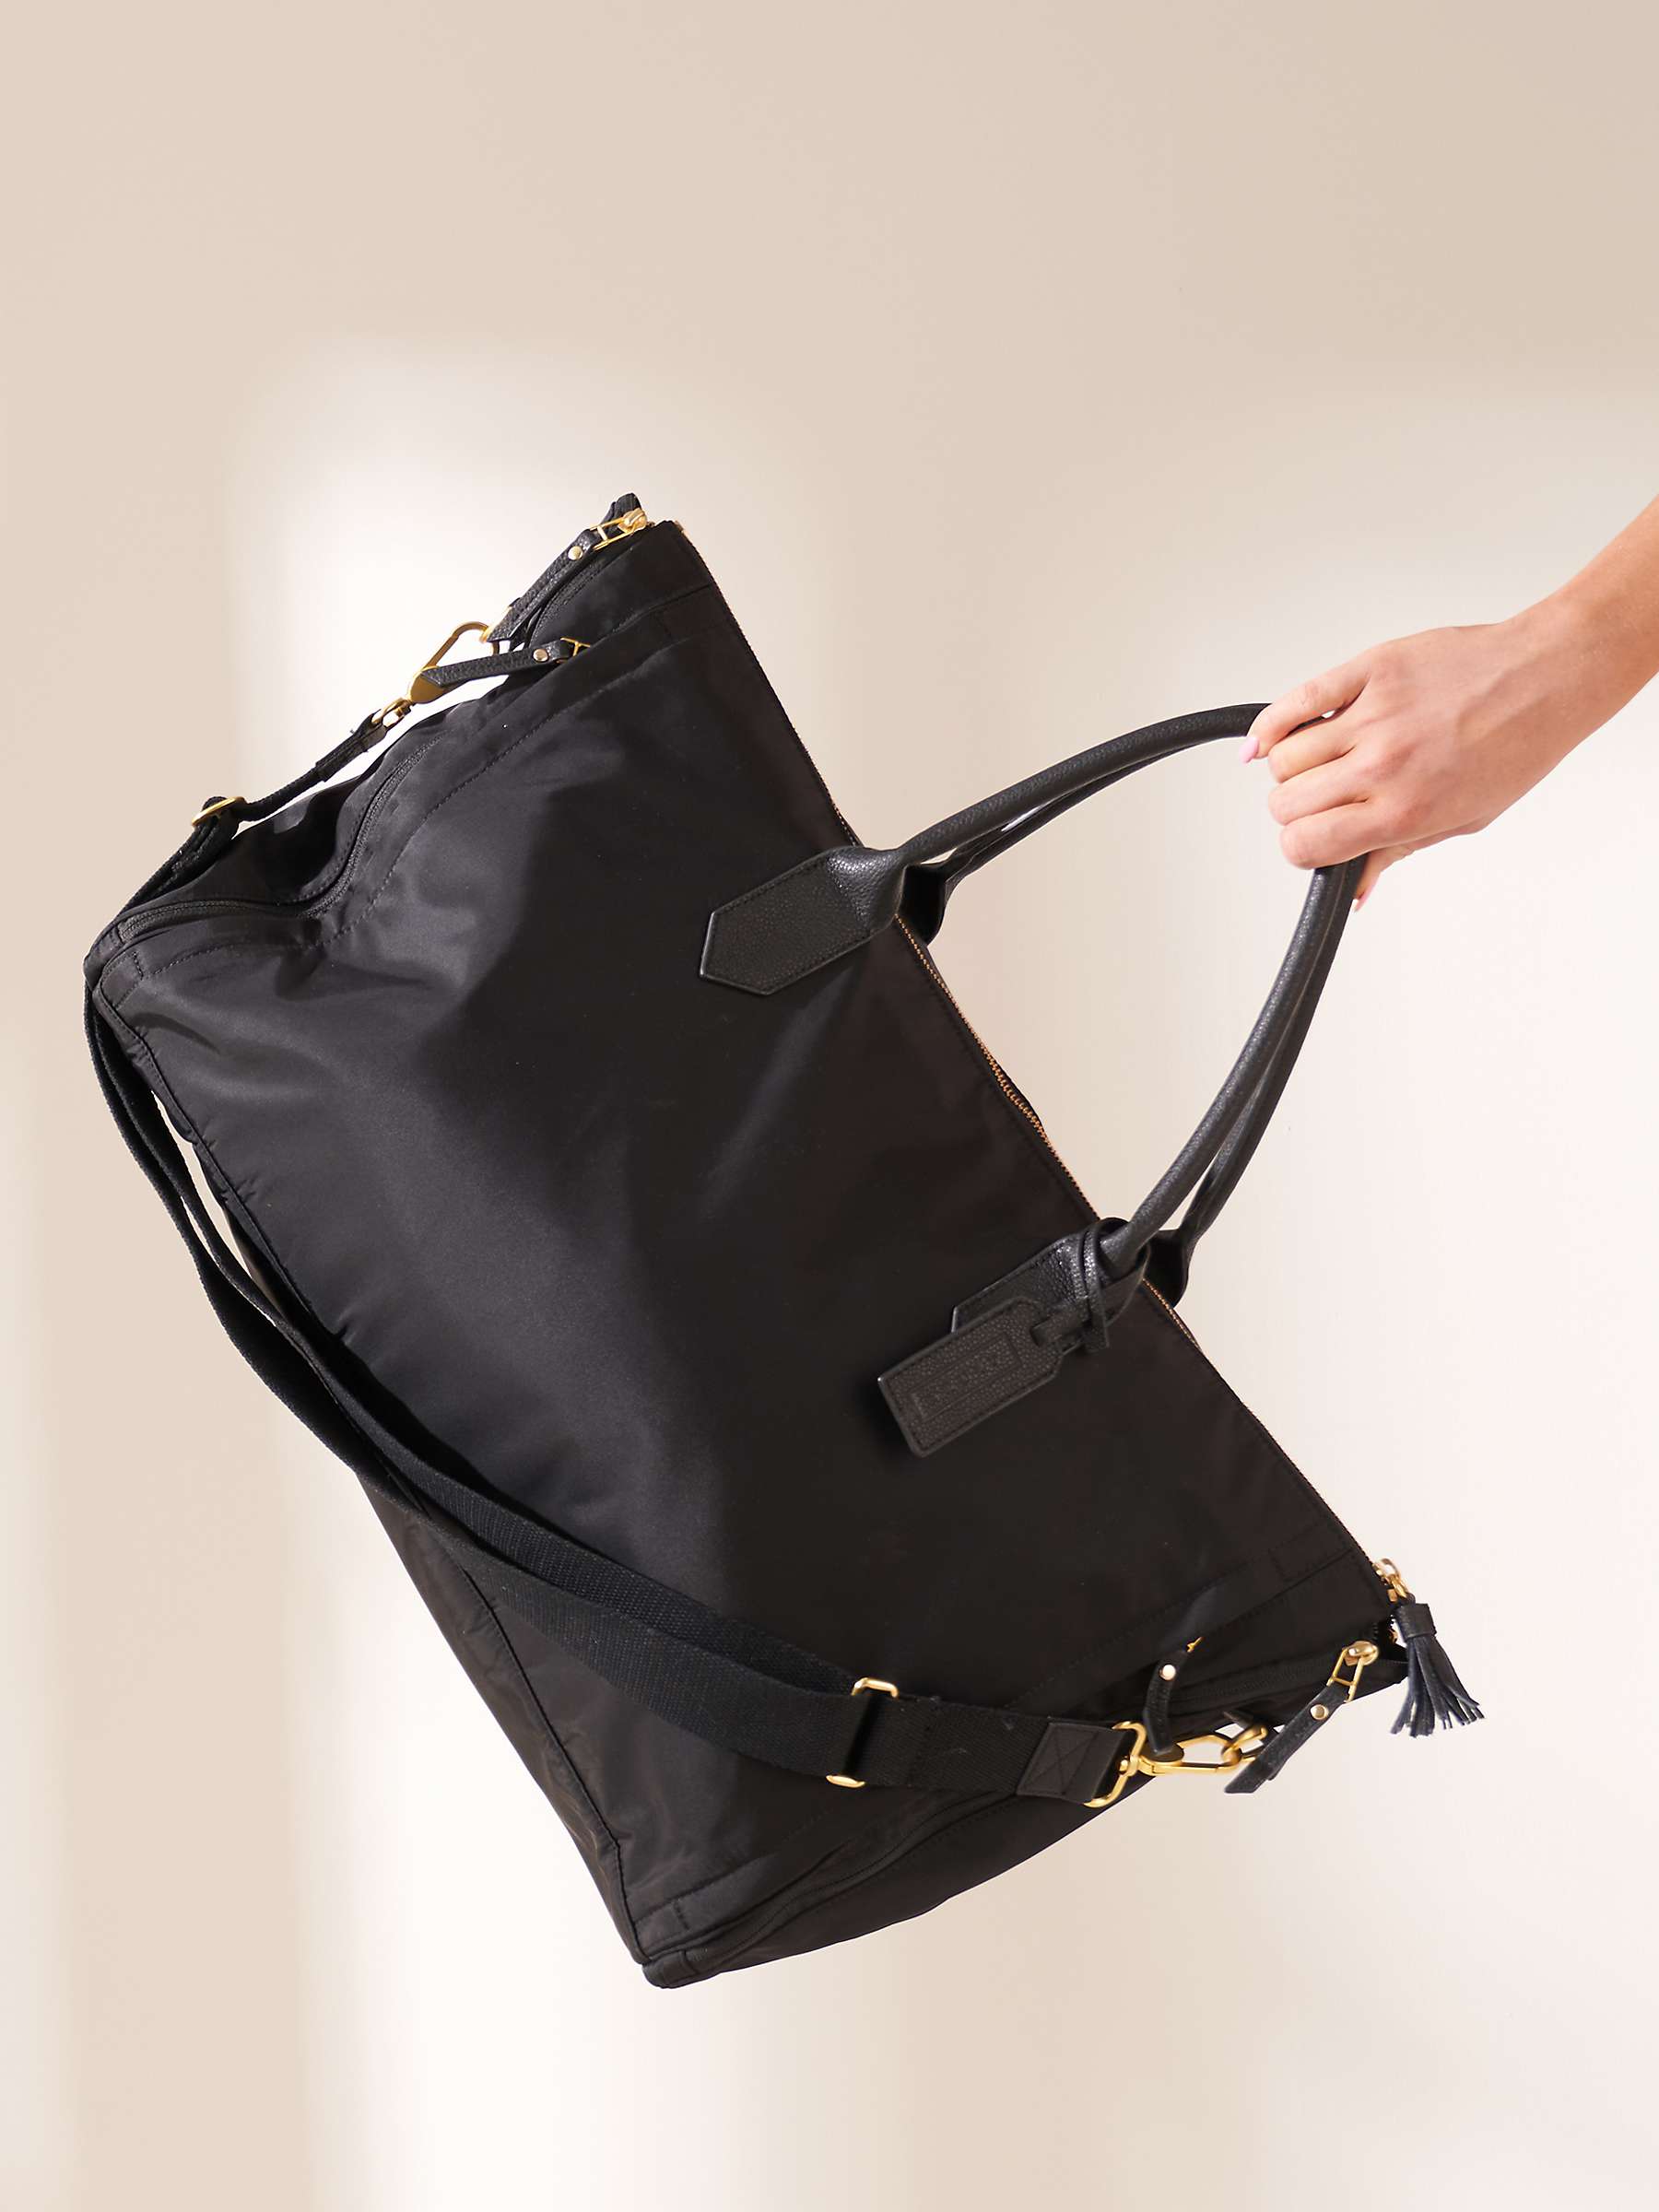 Buy Truly Her Nibs Medium Weekender Bag, Black Online at johnlewis.com